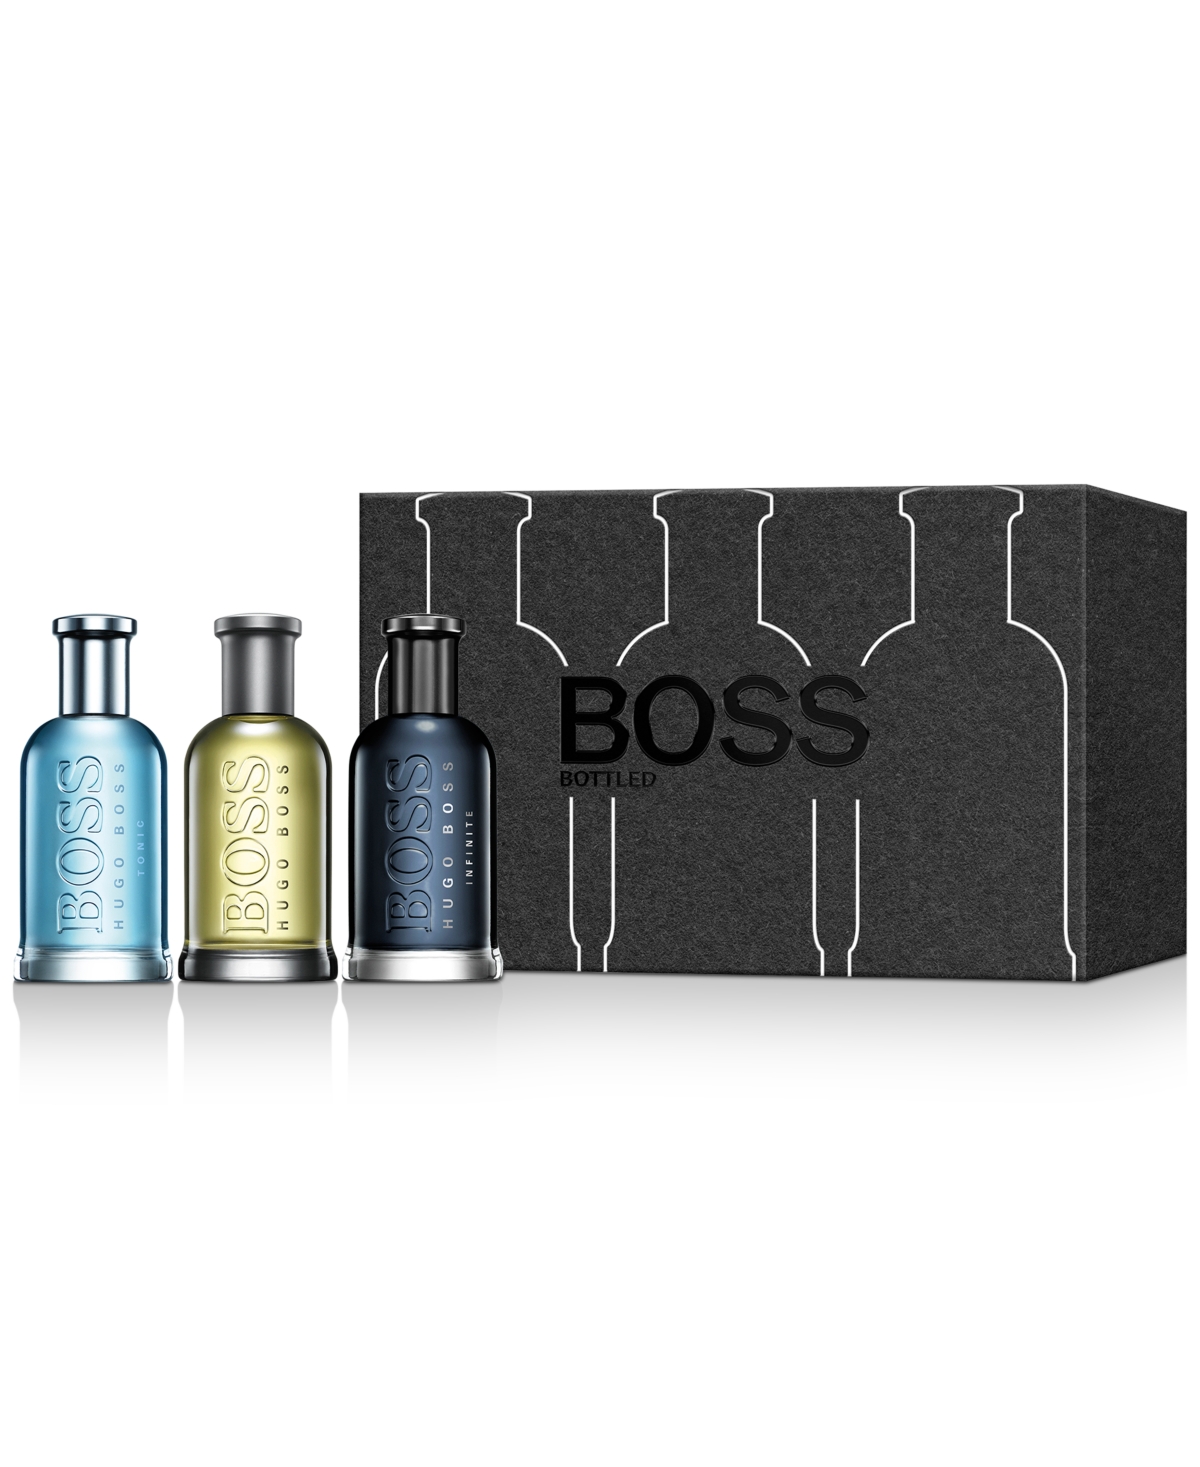 Hugo Hugo Boss BOSS Bottled Multiline Gift Set, at Macy's! - Macy's